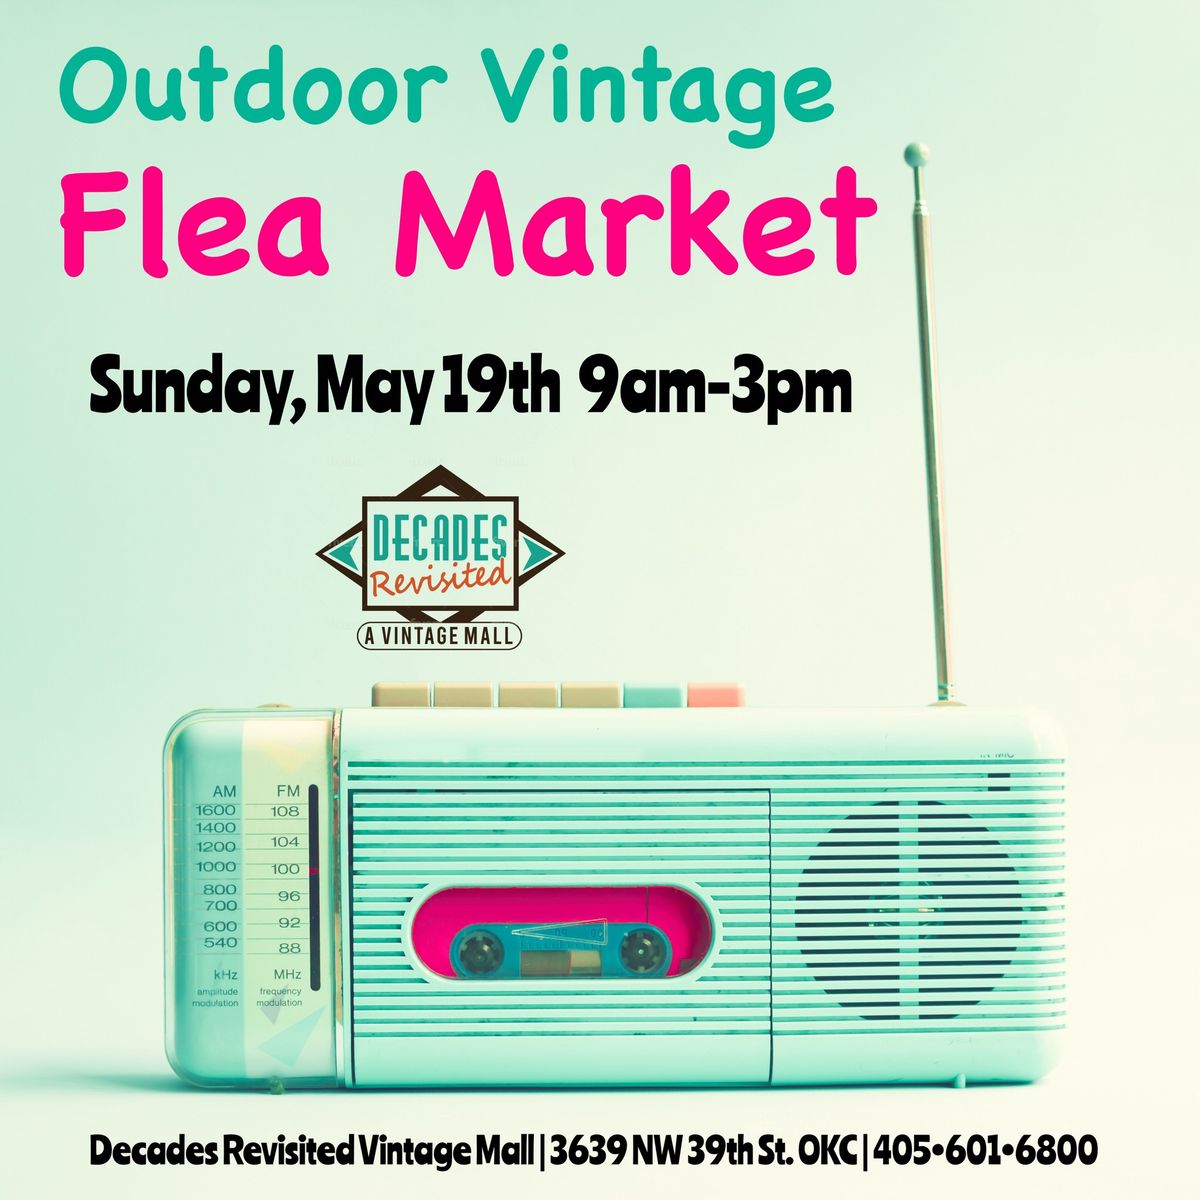 Outdoor Vintage Flea Market - Sunday, May 19th